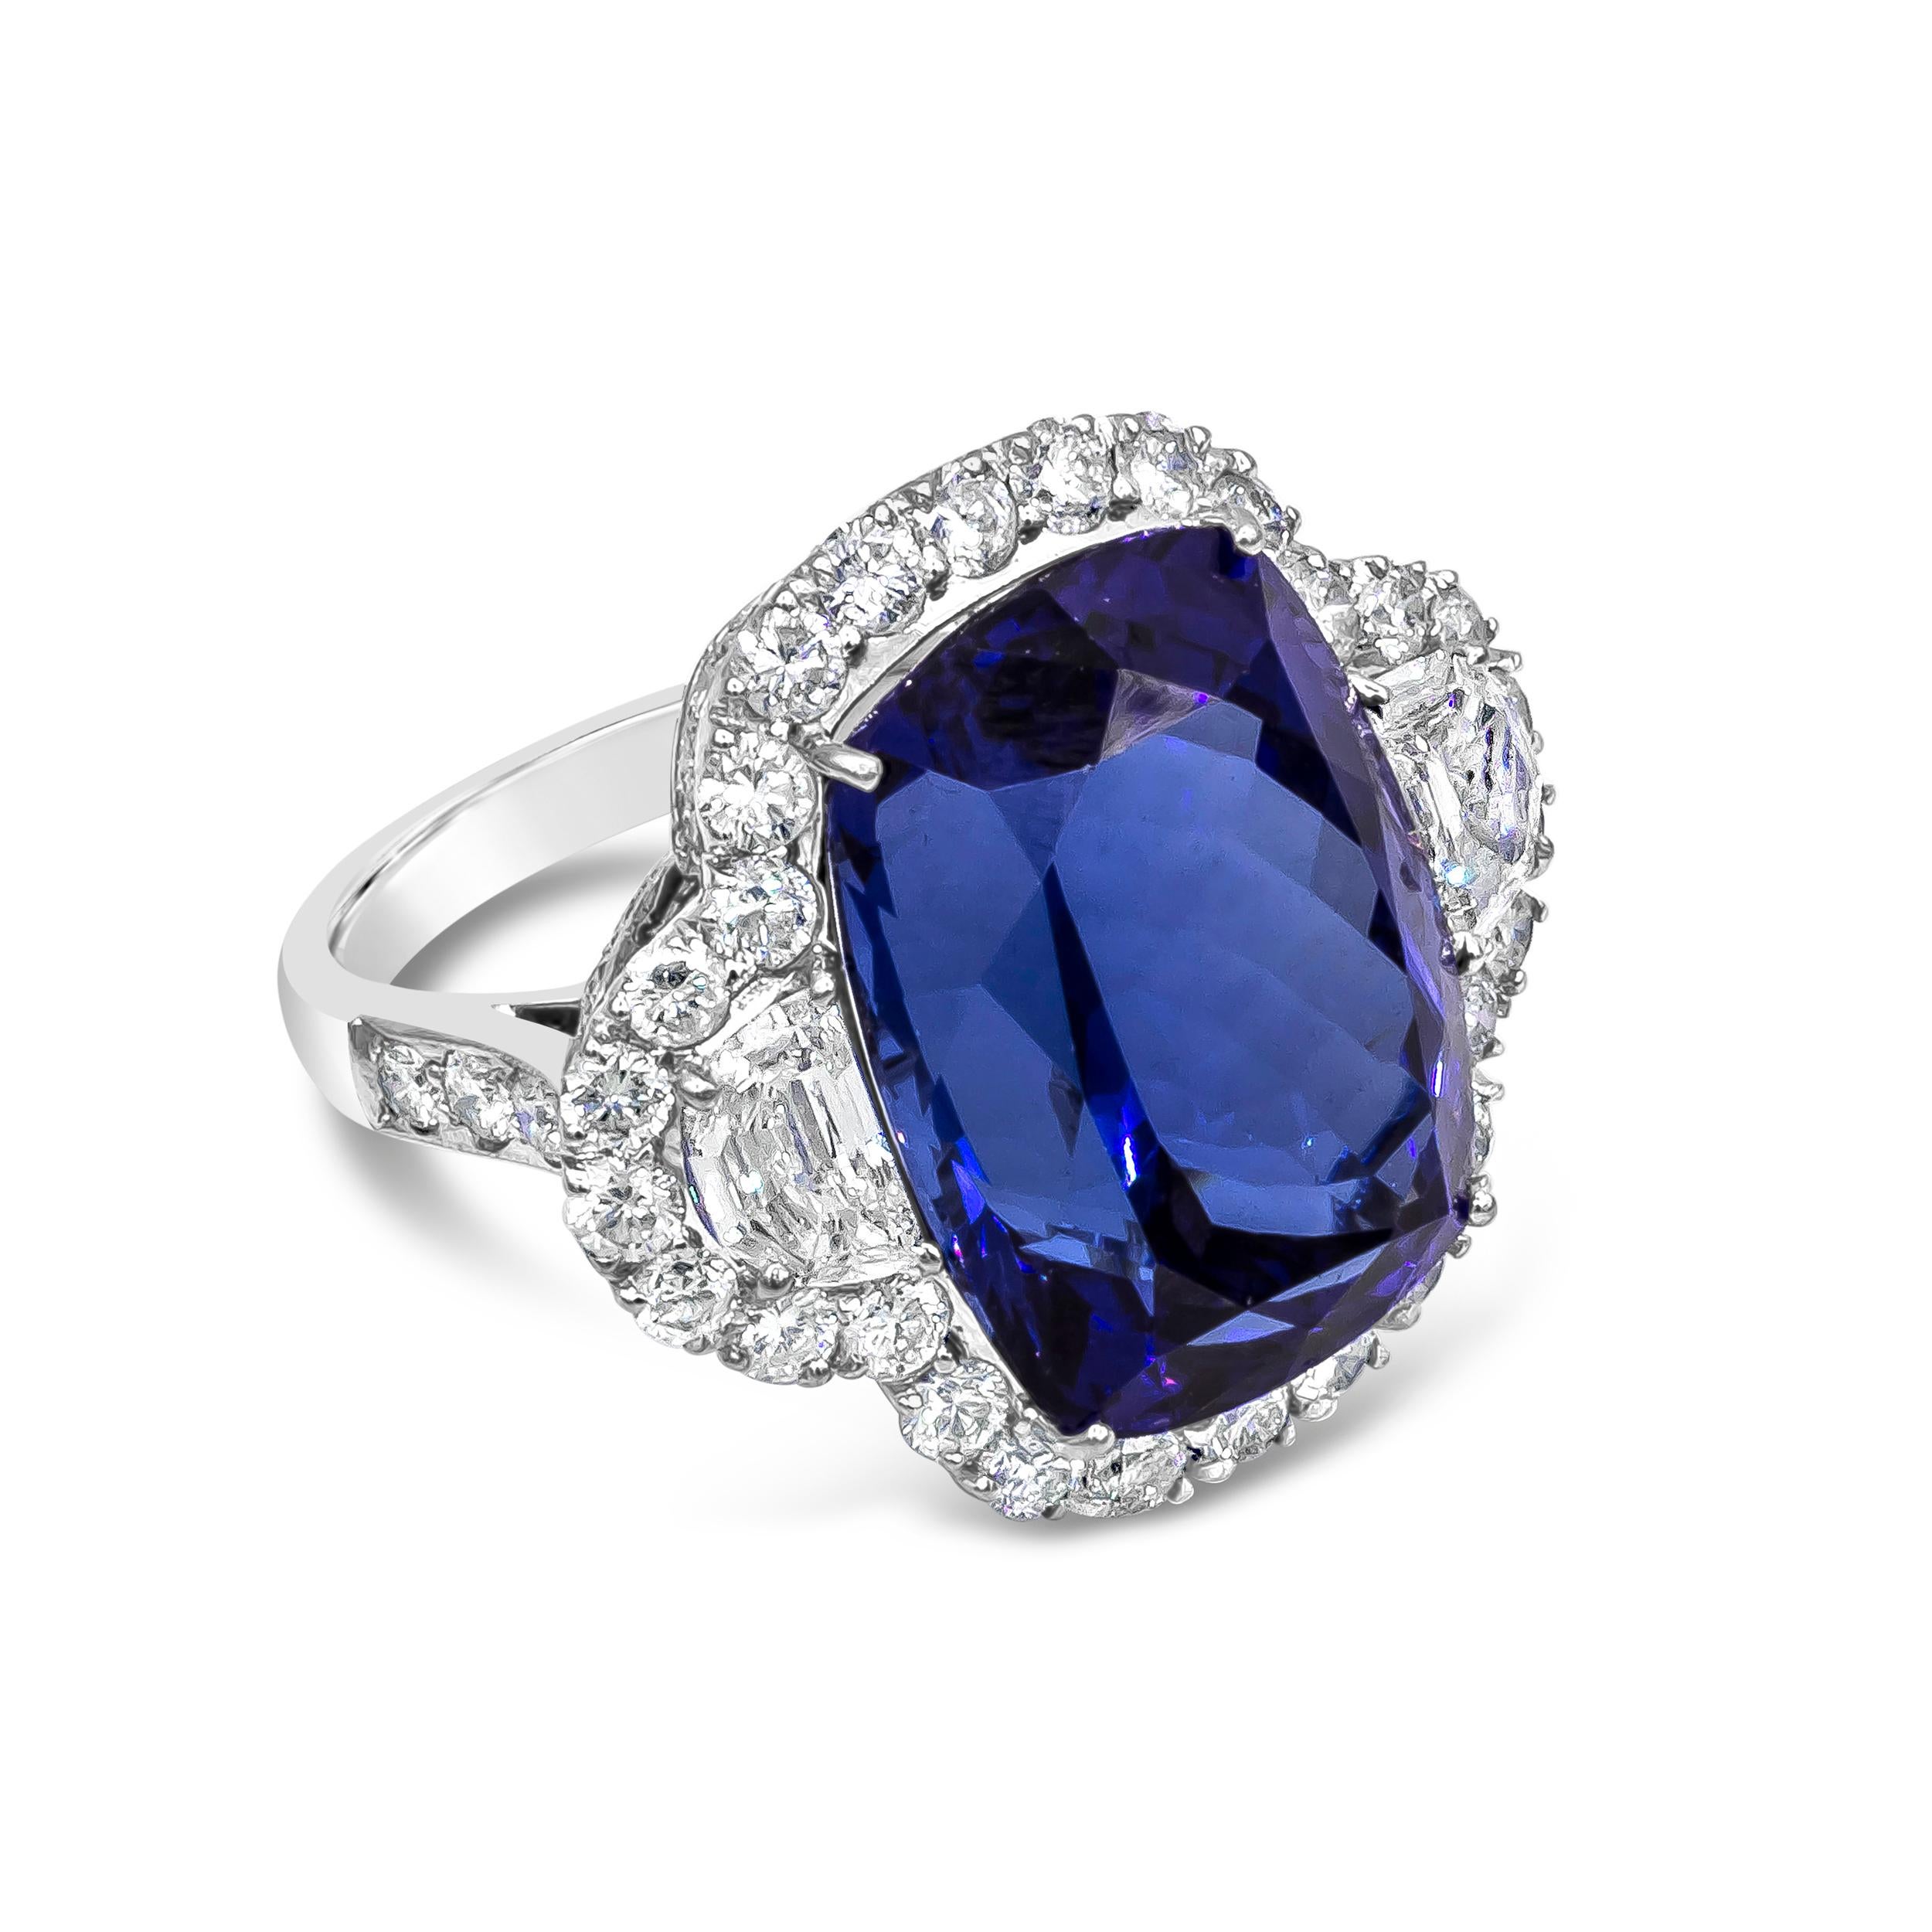 Ein atemberaubender Ring mit einem sattblauen Tansanit im Kissenschliff mit einem Gewicht von 26,35 Karat. Der Mittelstein wird von zwei halbmondförmigen Diamanten flankiert, die von einem Brillantring umrahmt sind. Die Diamanten wiegen insgesamt